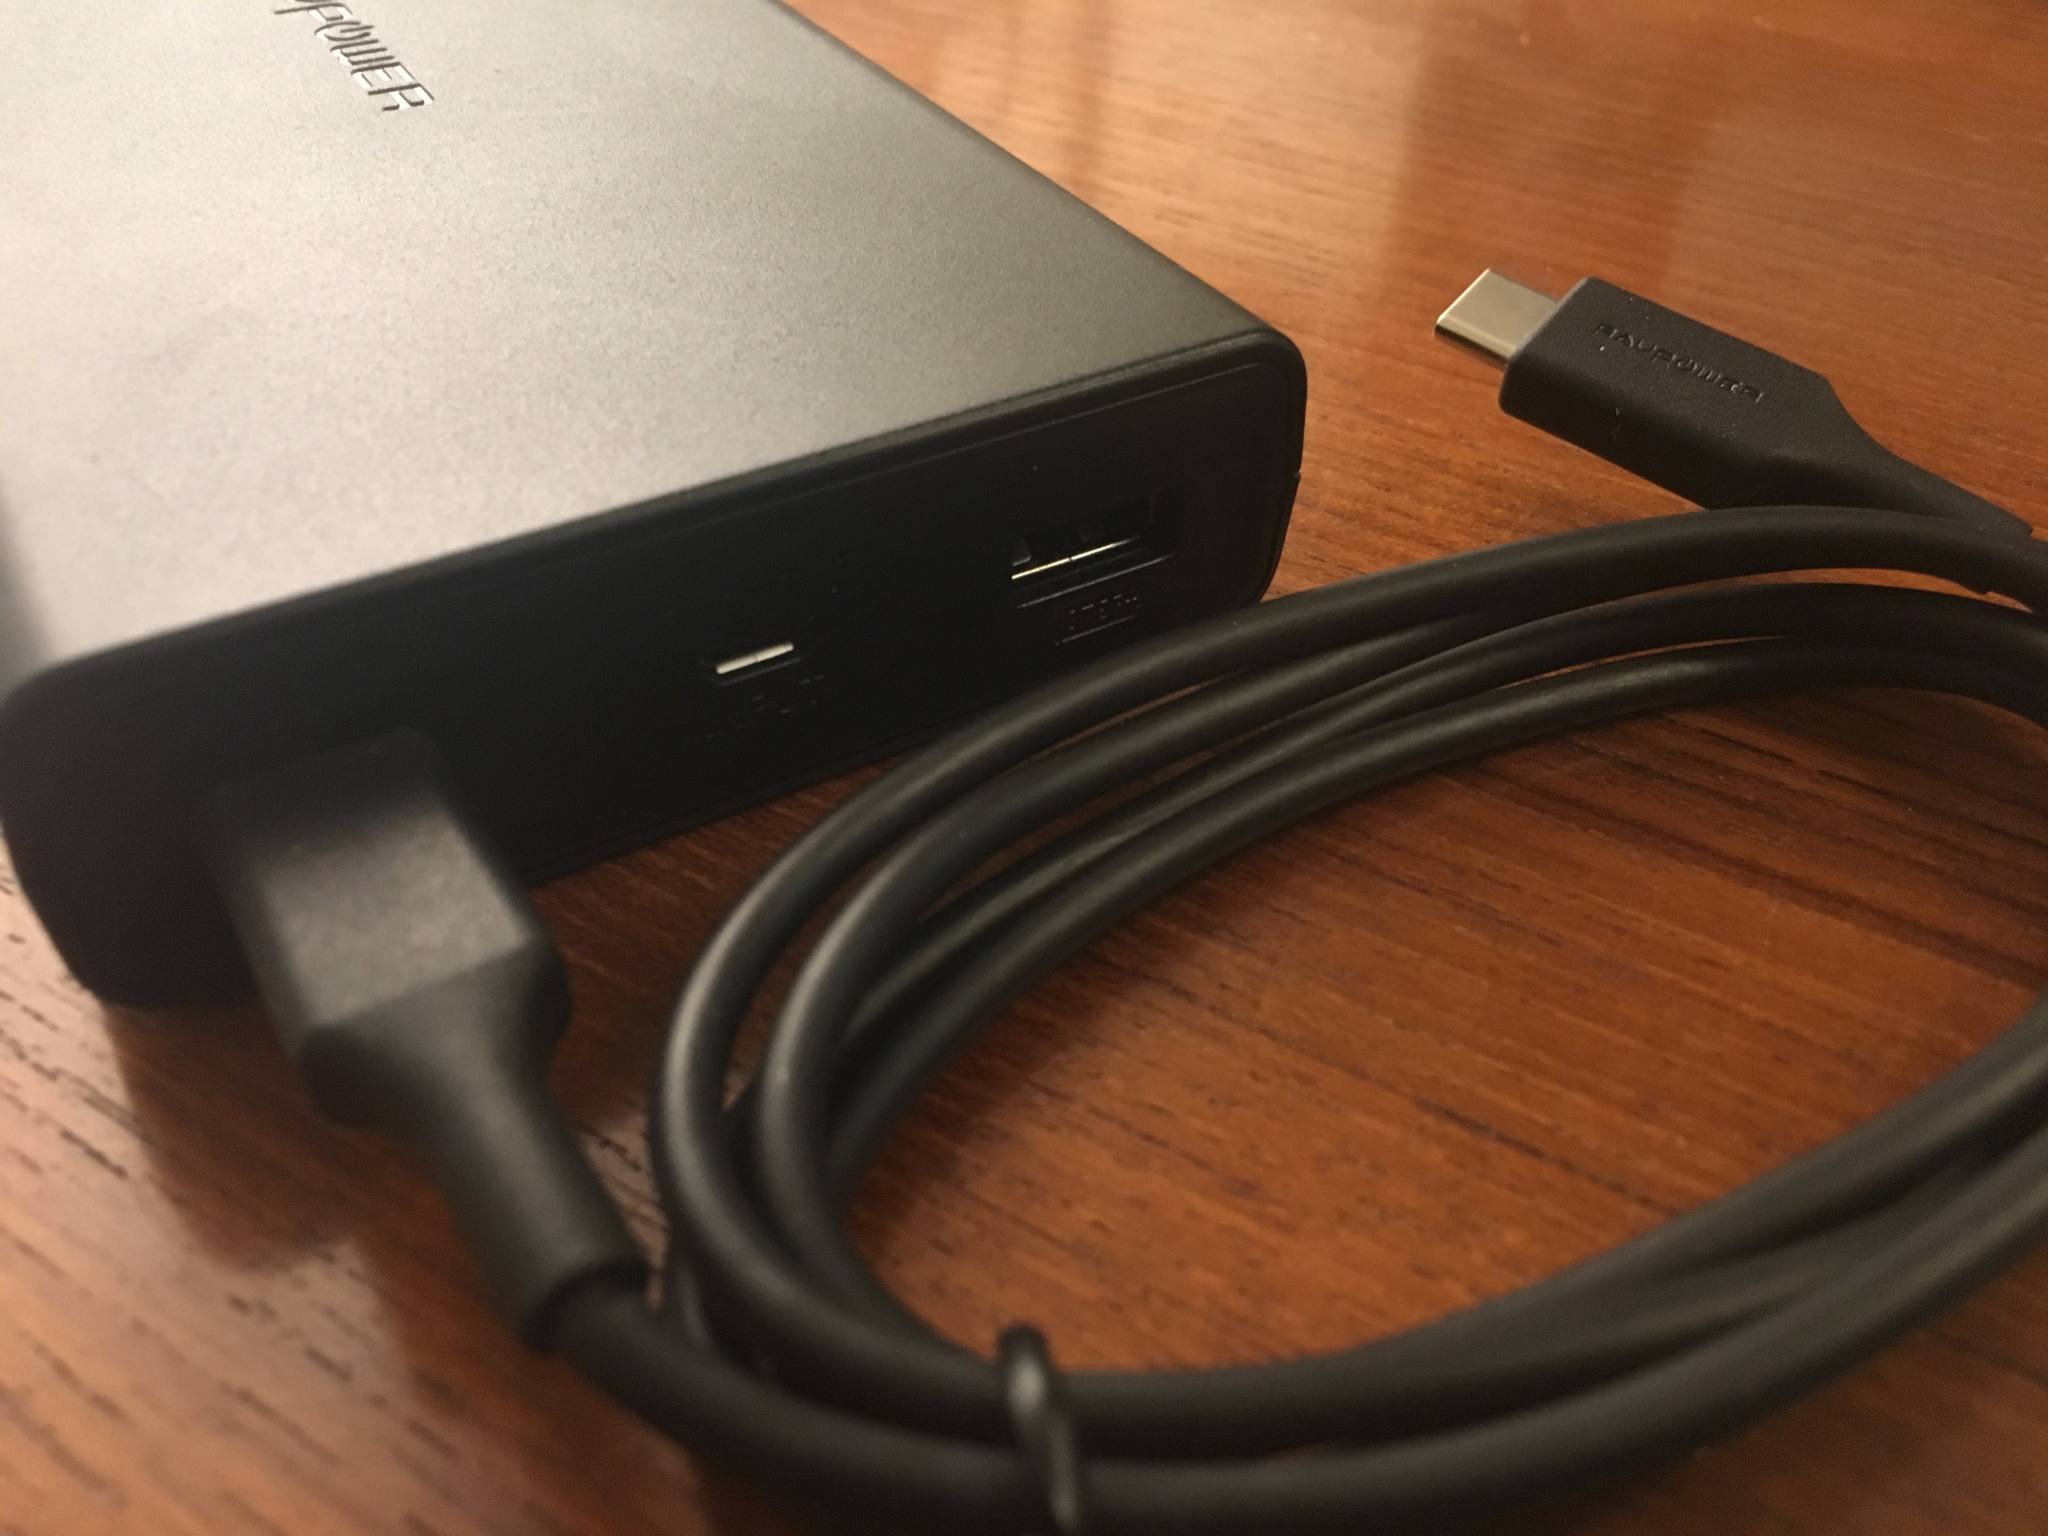 Praktisch: USB-C- und Micro-USB-Kabel liegen bei.